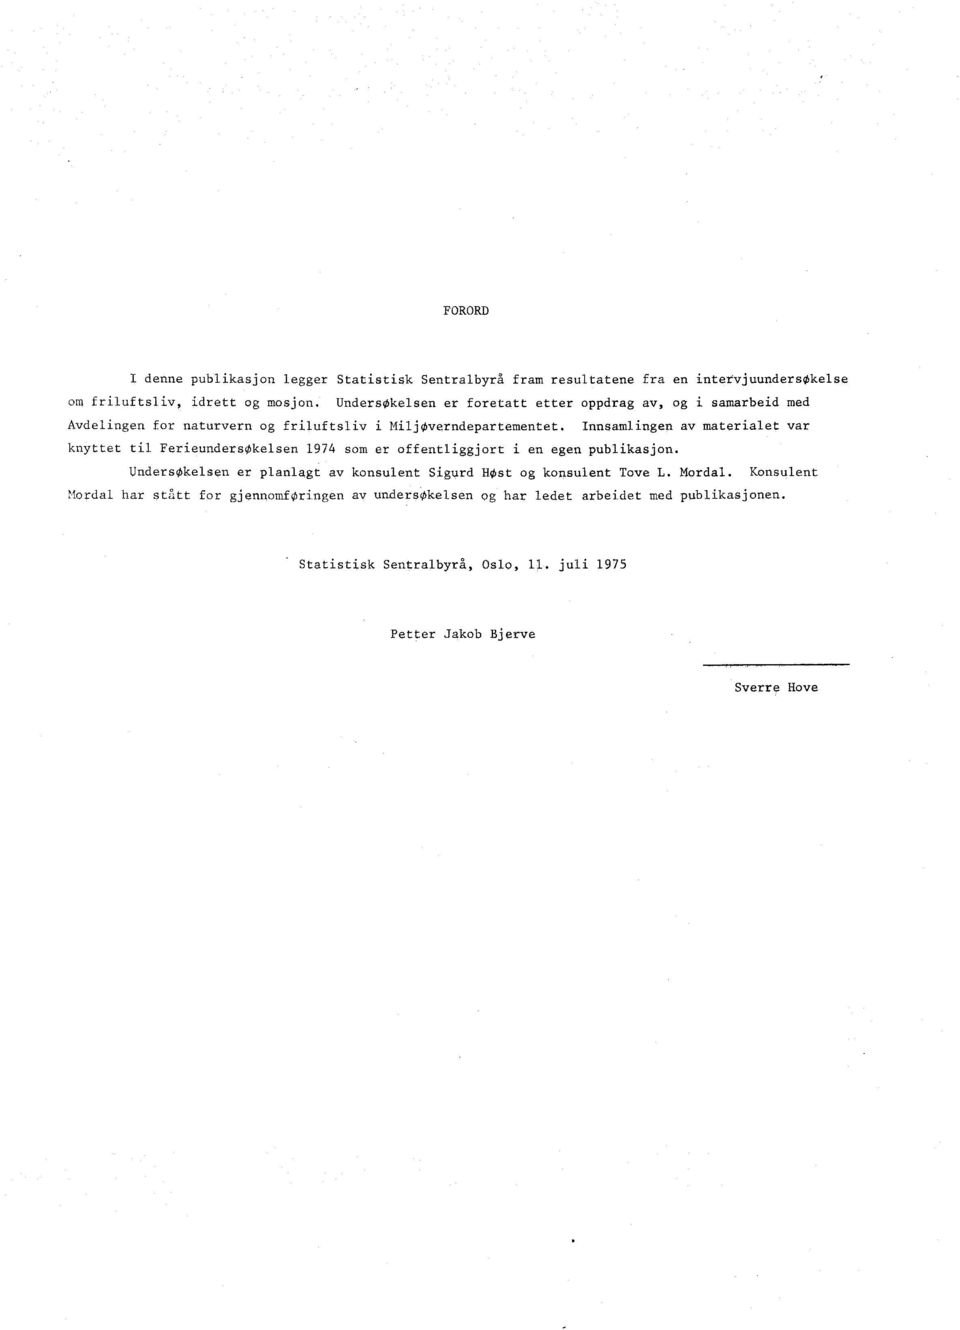 Innsamlingen av materialet var knyttet til FerieundersOk elsen 1974 som er offentliggjort i en egen publikasjon.